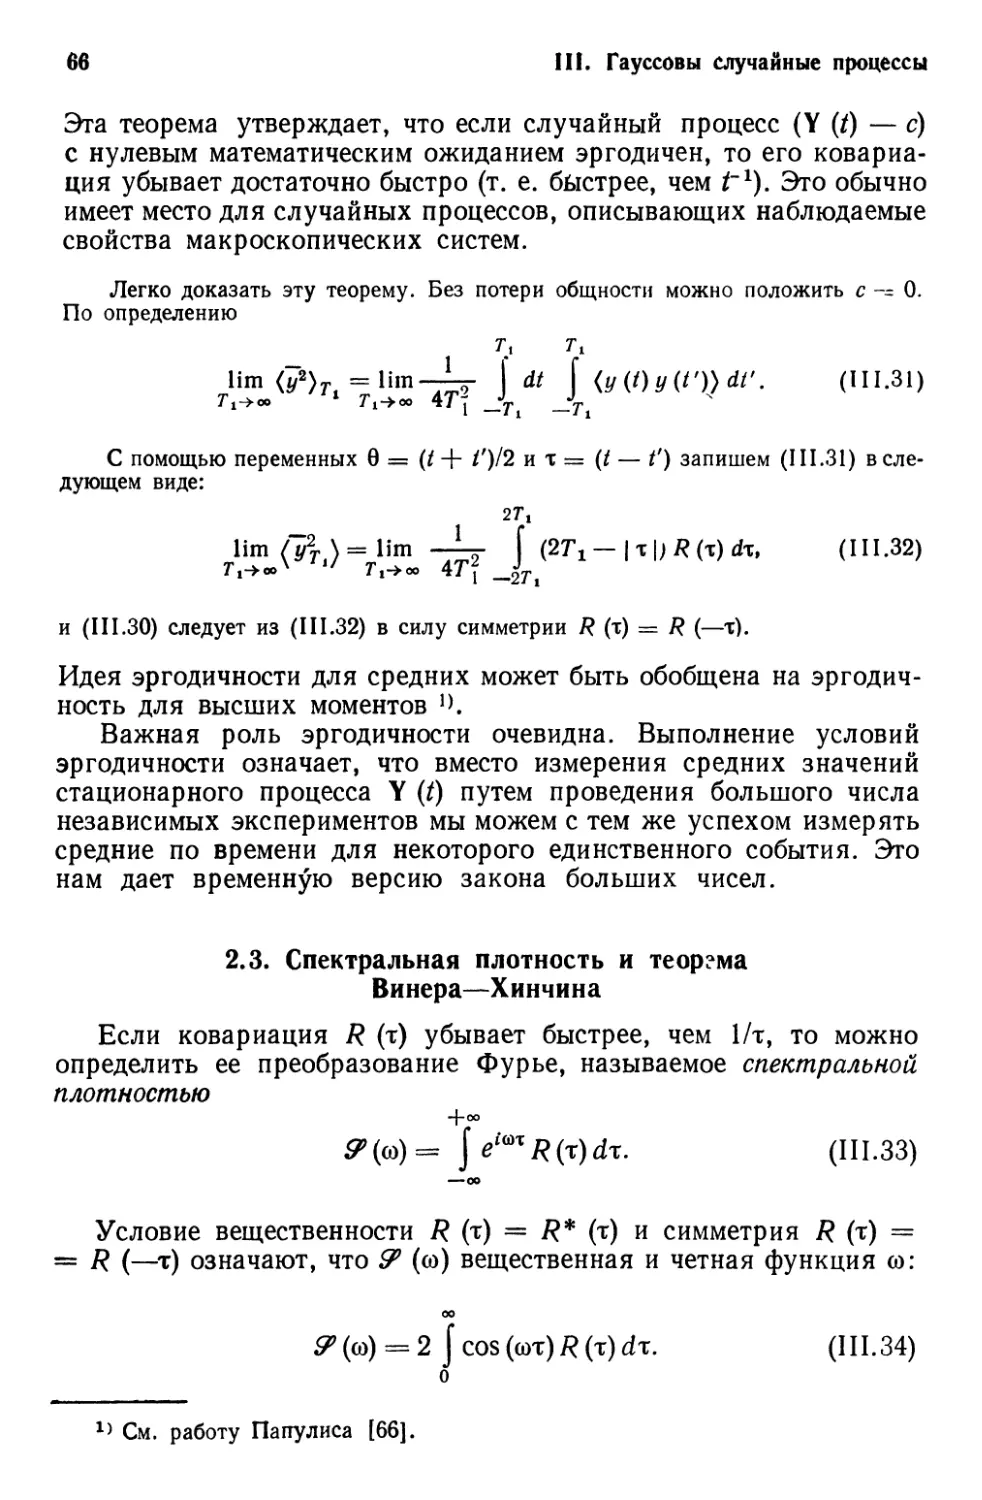 2.3. Спектральная плотность и теорема Винера—Хинчина